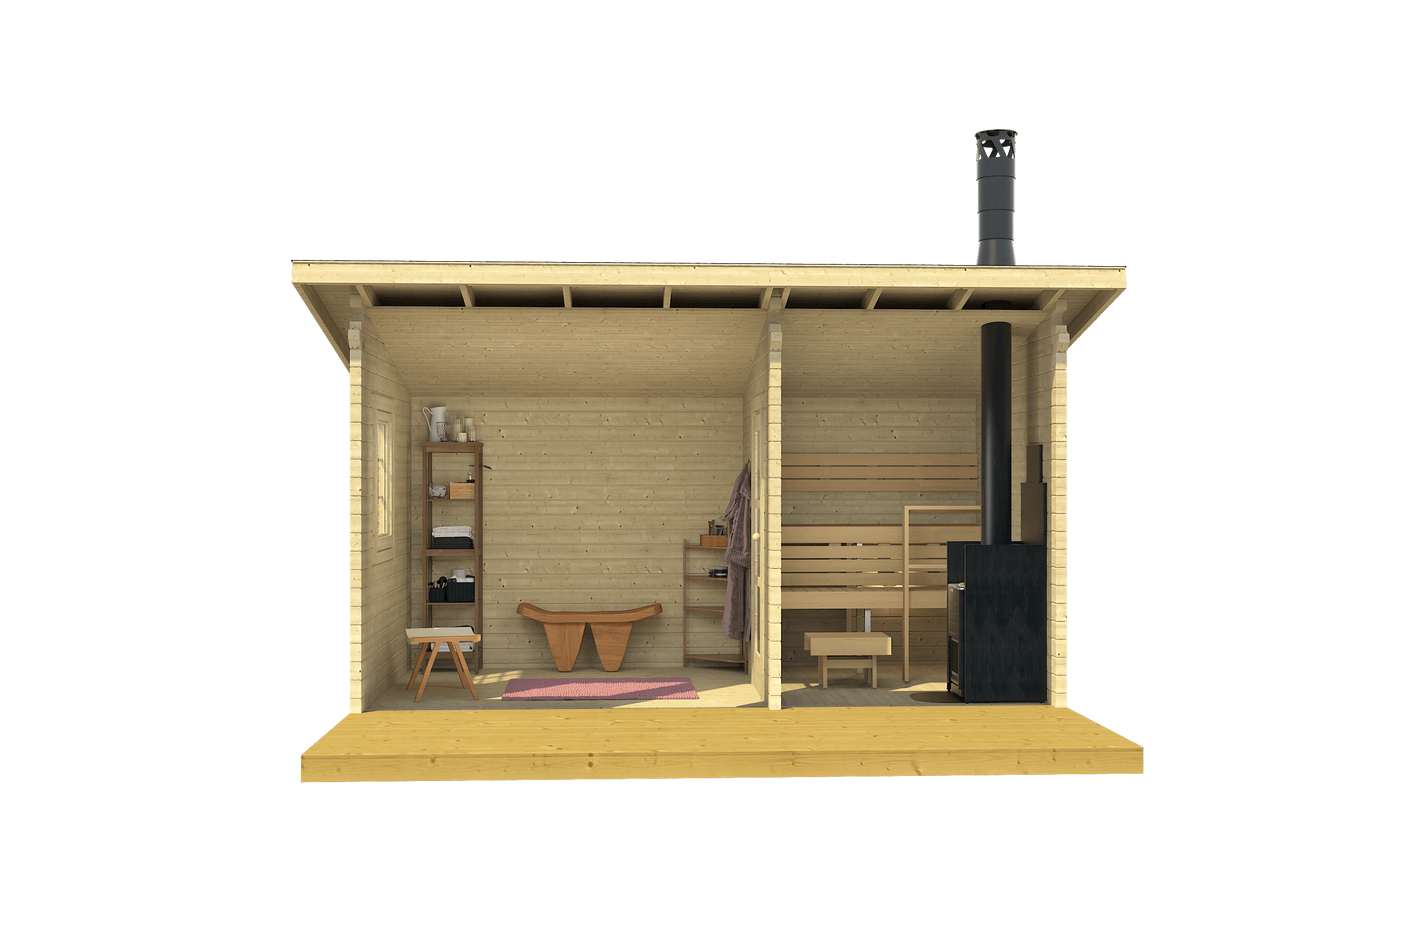 MODERNI PIHASAUNA 15 4.7x2.4m Sauna Log Cabin Internal Front